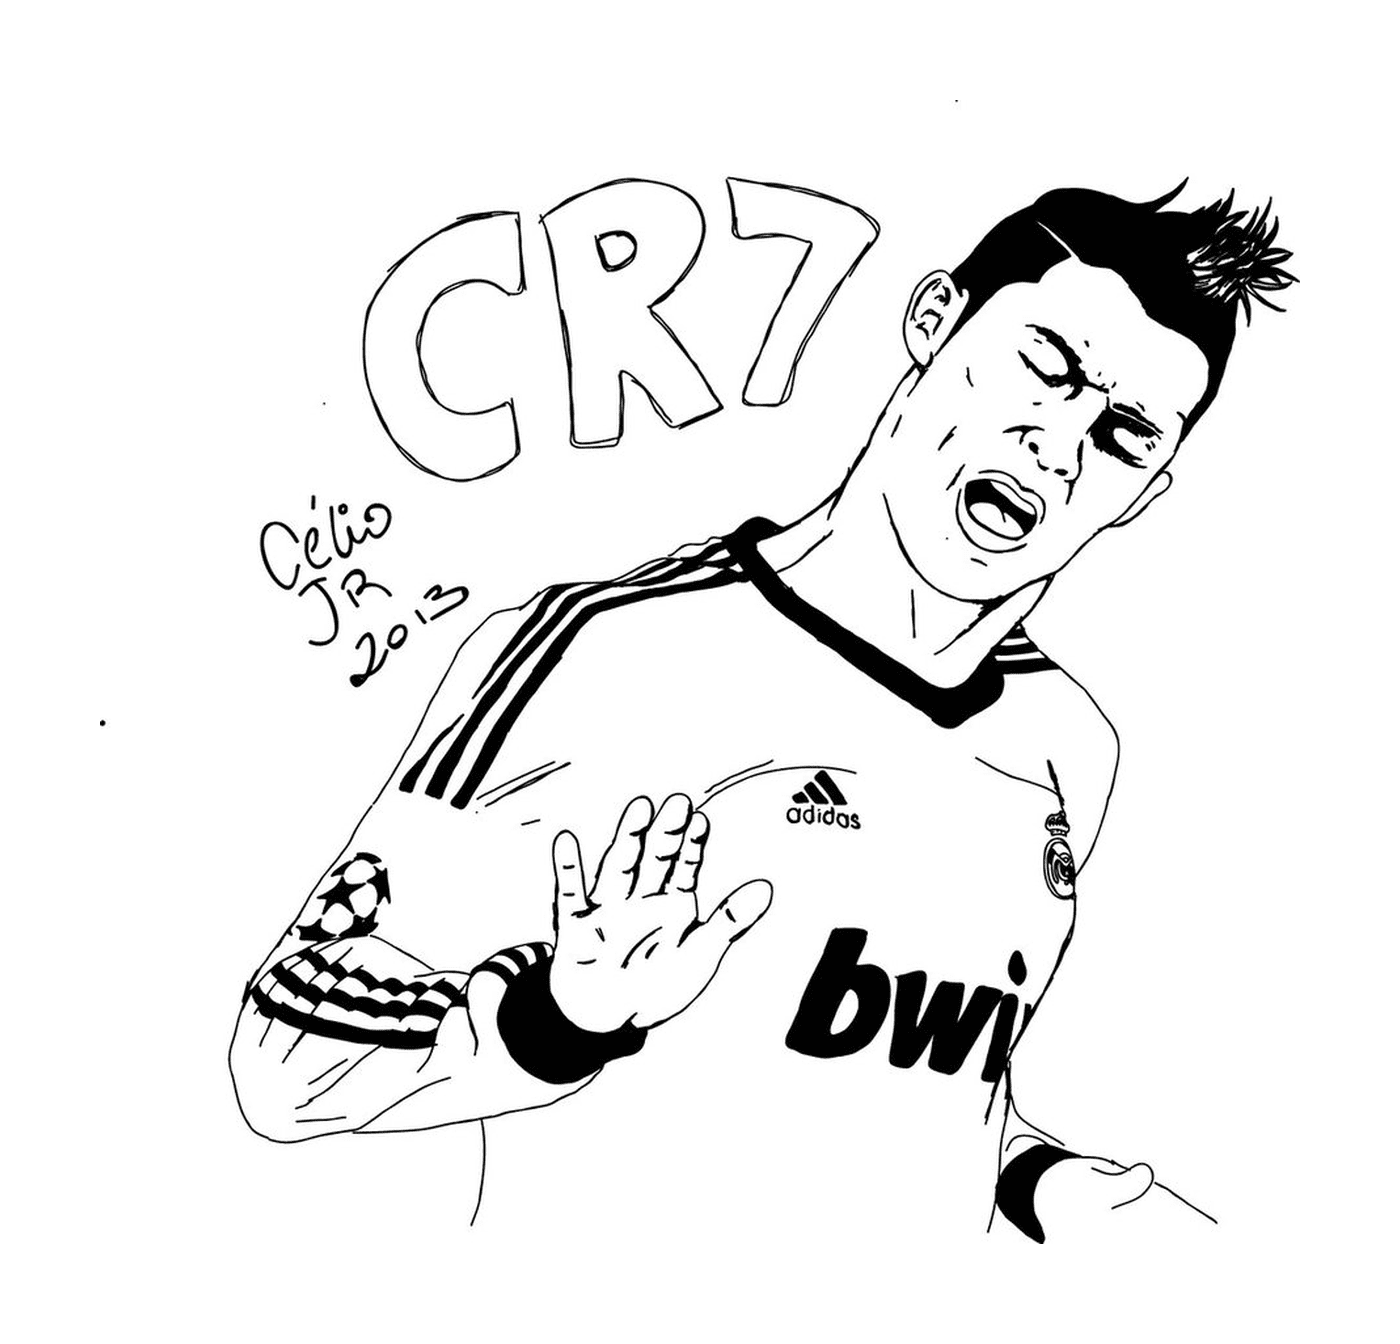  Cristiano Ronaldo feiert ein Ziel 